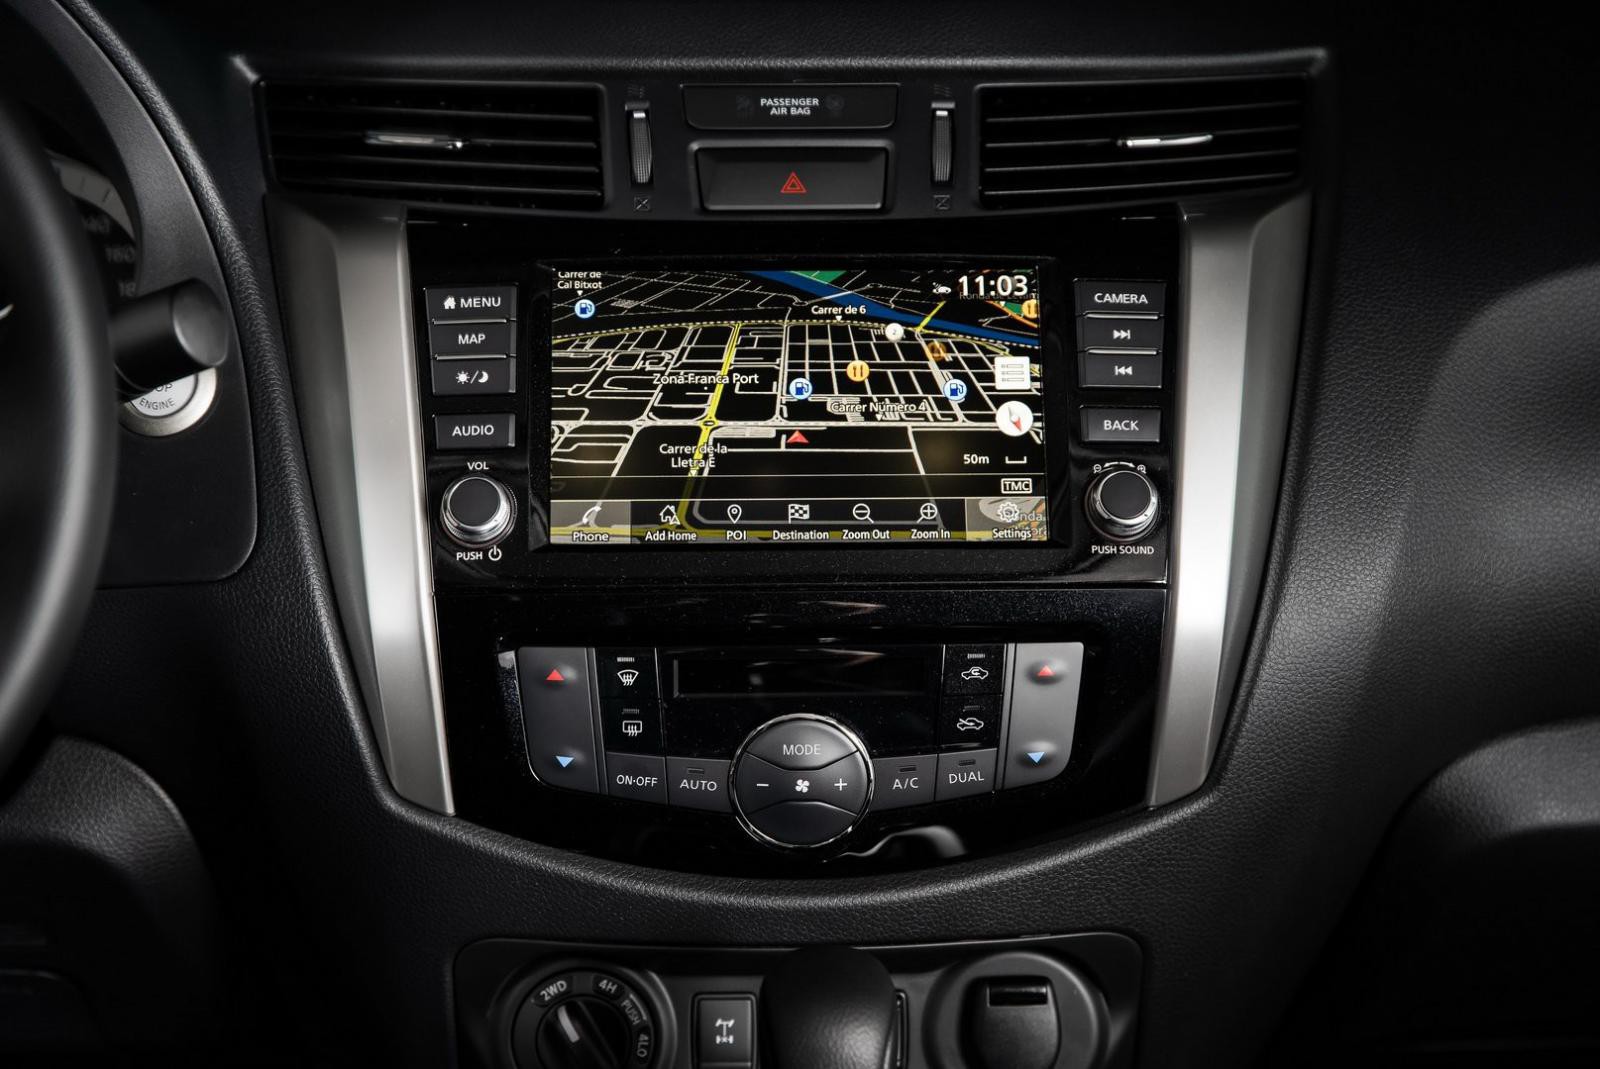 Nissan Navara 2020 được trang bị thêm hệ thống thông tin giải trí công nghệ mới tích hợp Apple CarPlay qua màn hình cảm ứng 8 inch